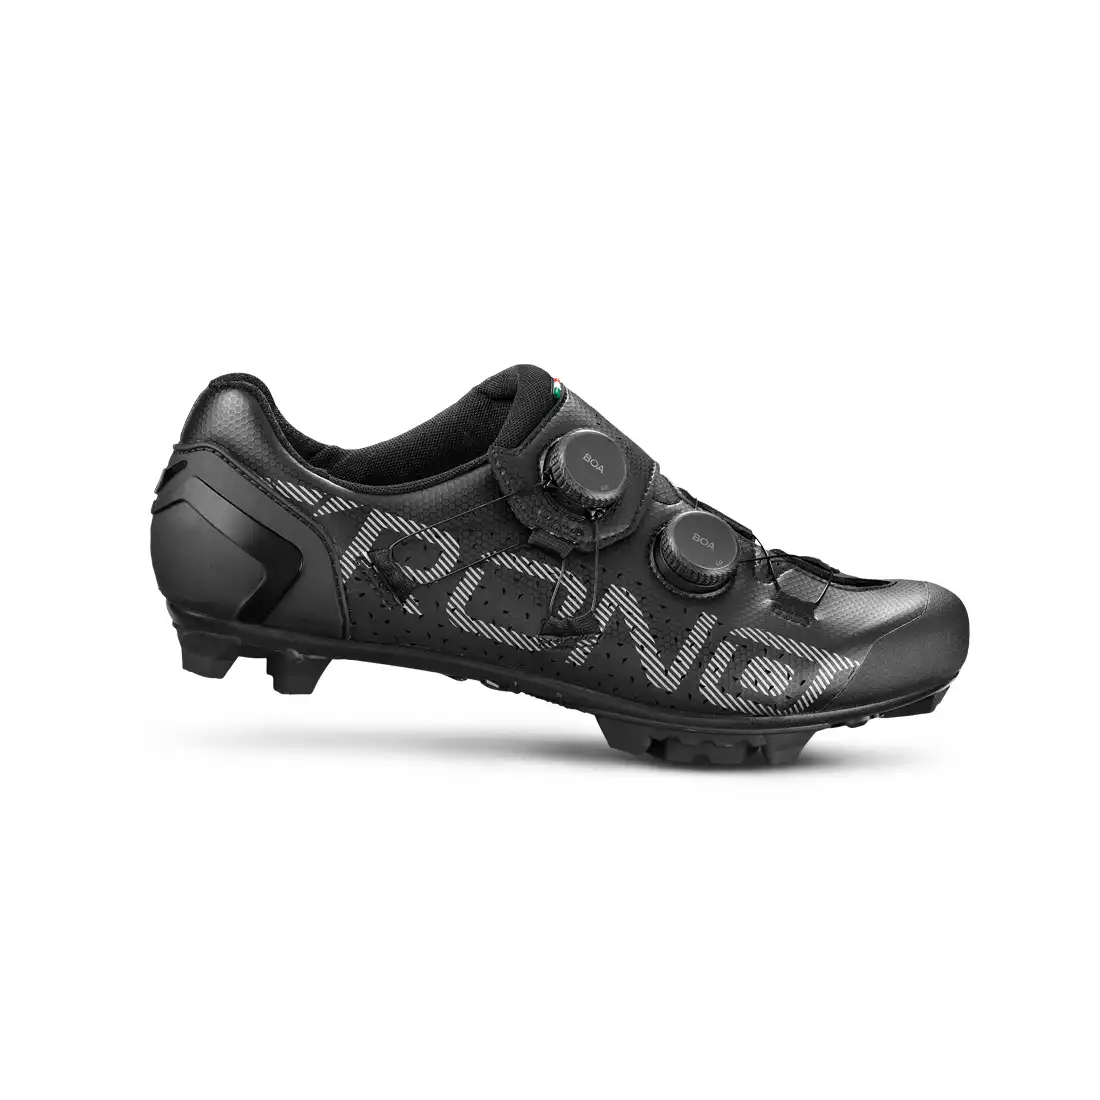 CRONO CX-1 MTB kerékpáros cipő fekete